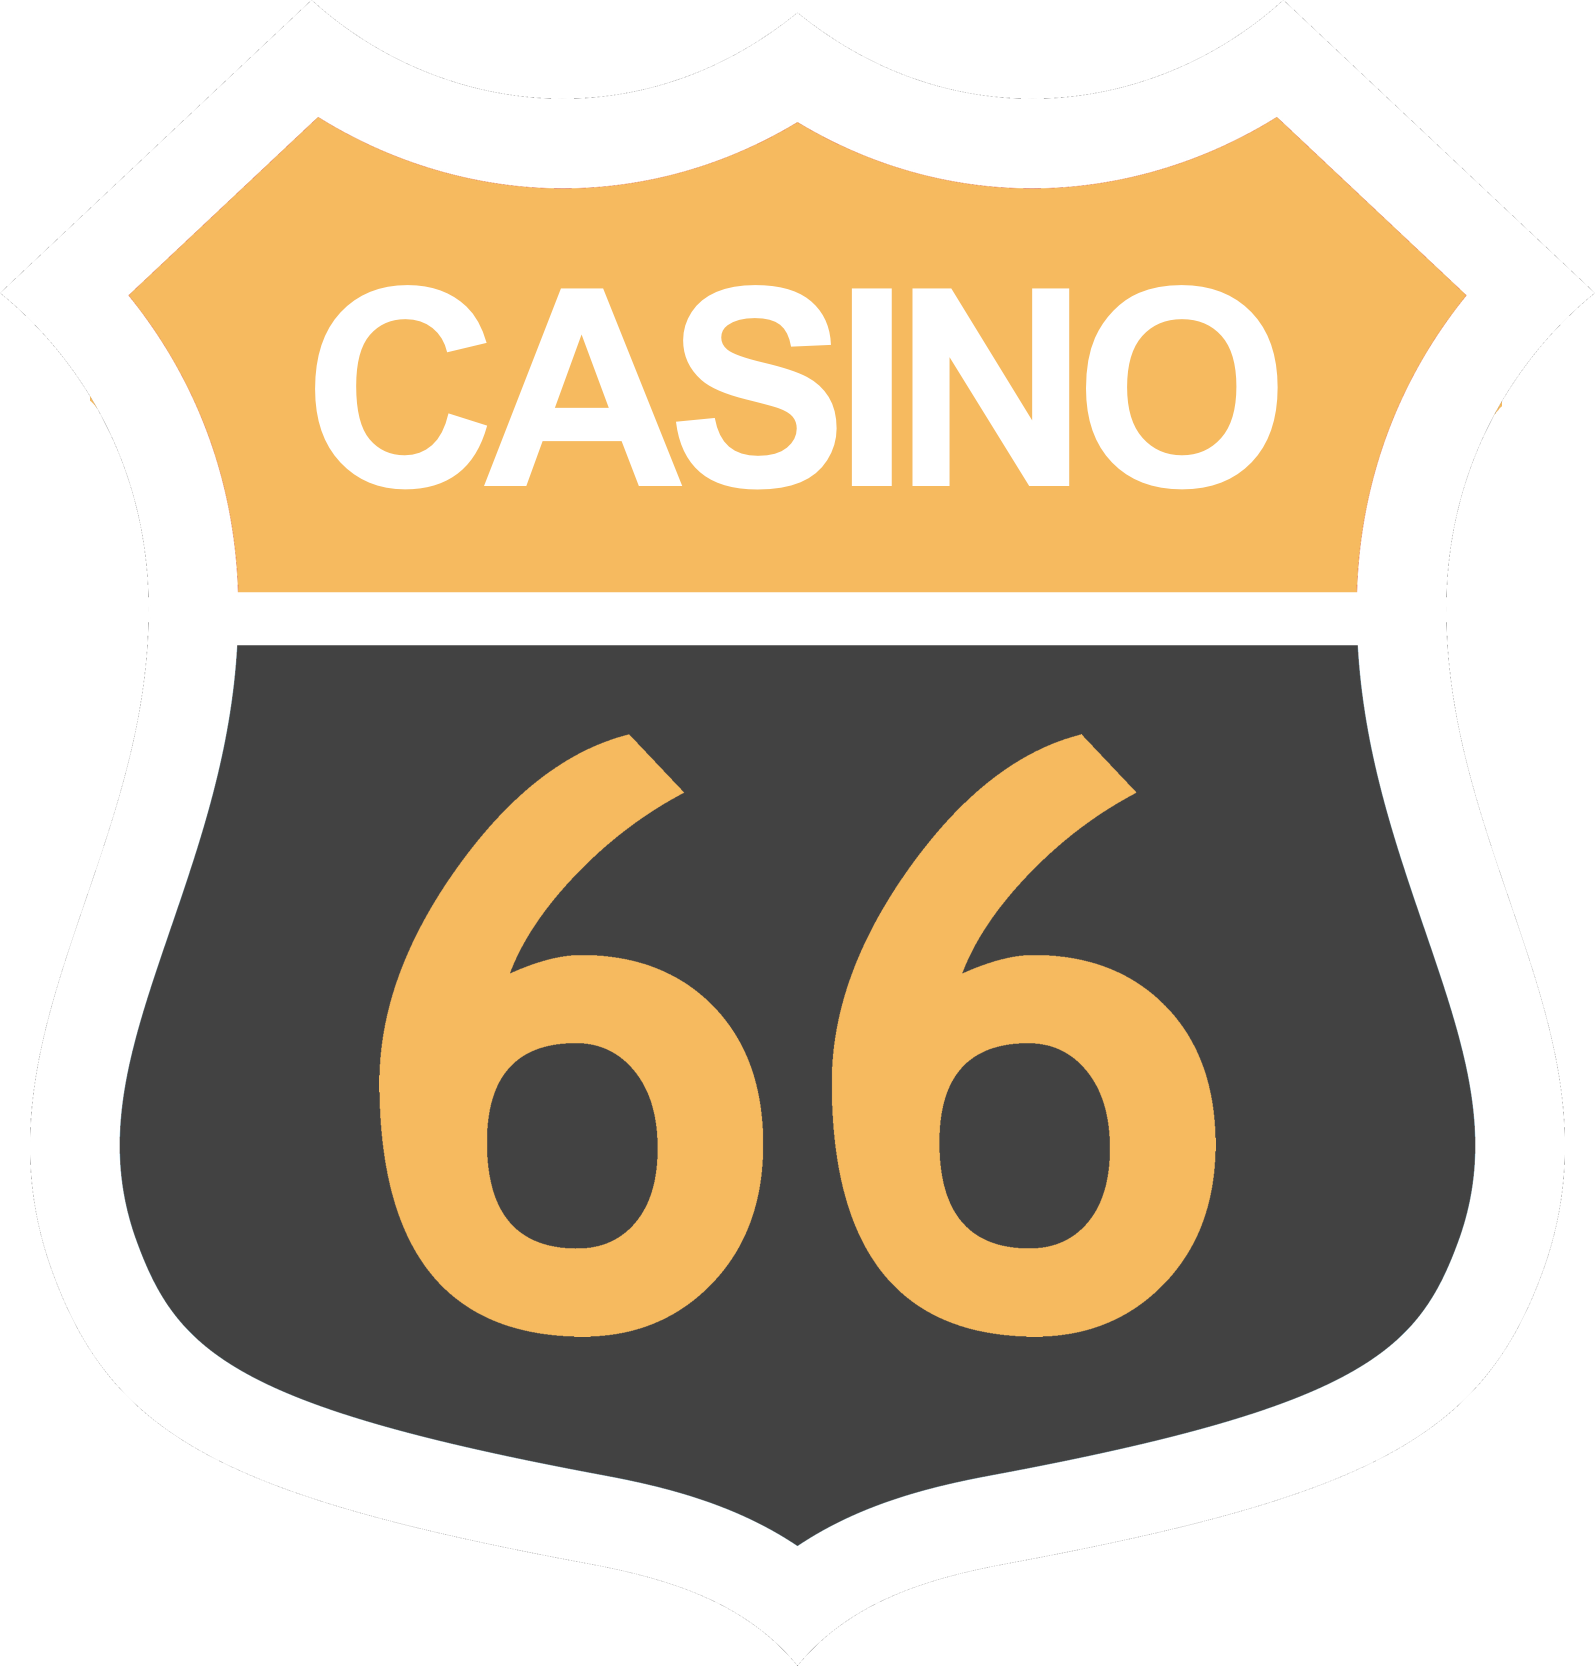 Casino66